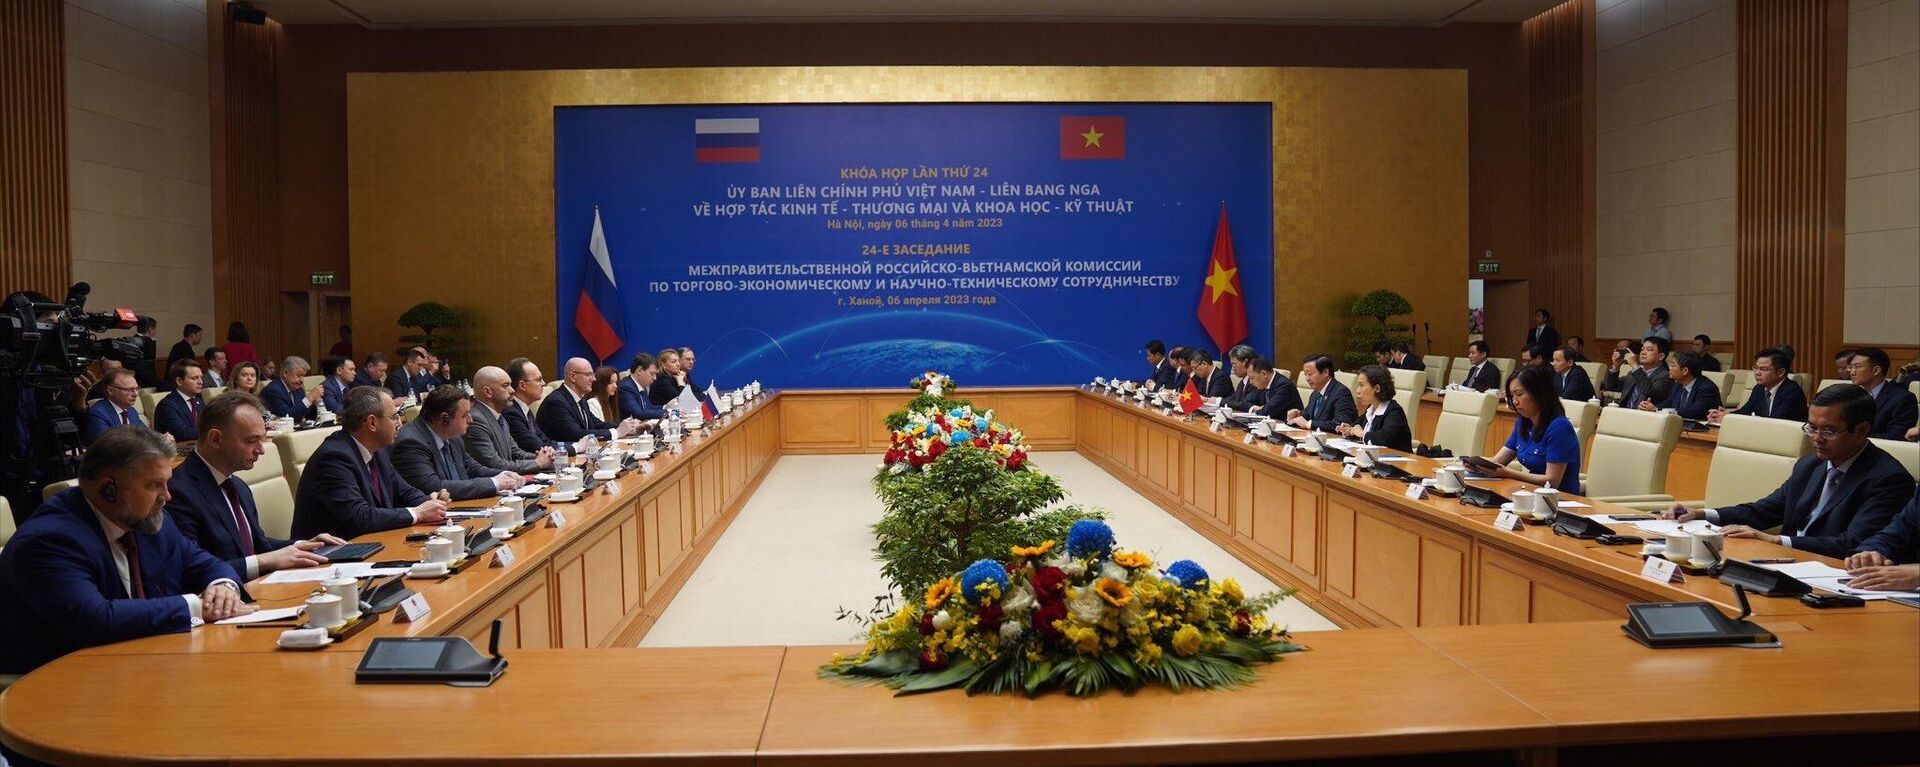 Khóa họp lần thứ 24 Ủy ban Liên chính phủ VN - LBN về hợp tác thương mại kinh tế và khoa học kỹ thuật diễn ra vào ngày 6/4 tại Hà Nội - Sputnik Việt Nam, 1920, 06.04.2023